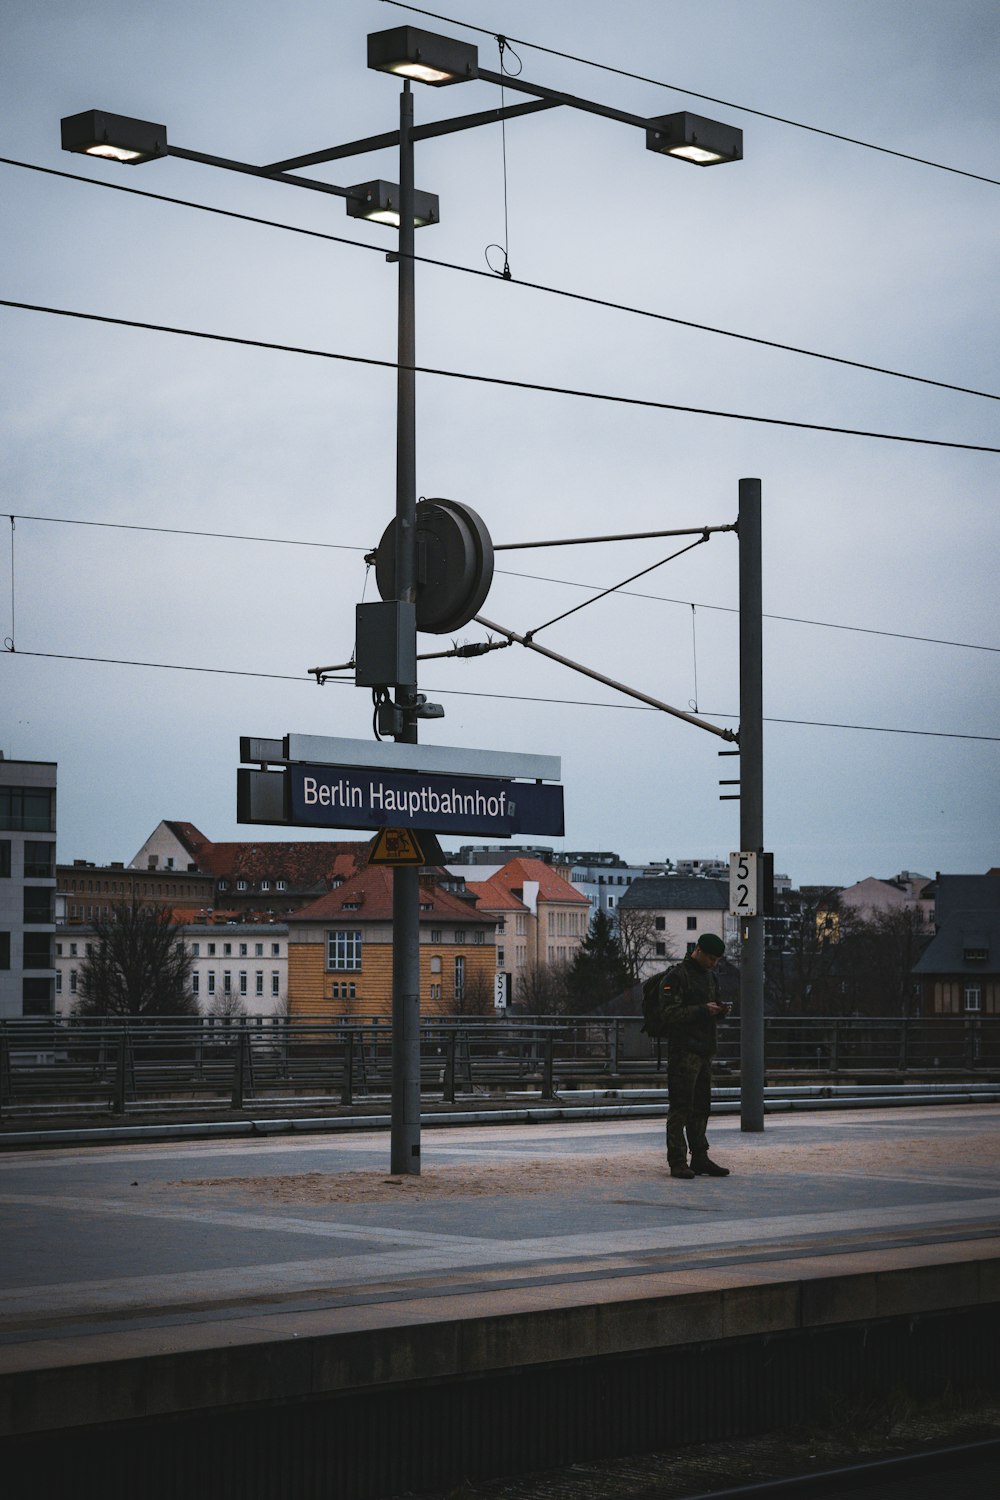 a man standing on a train platform next to a street sign